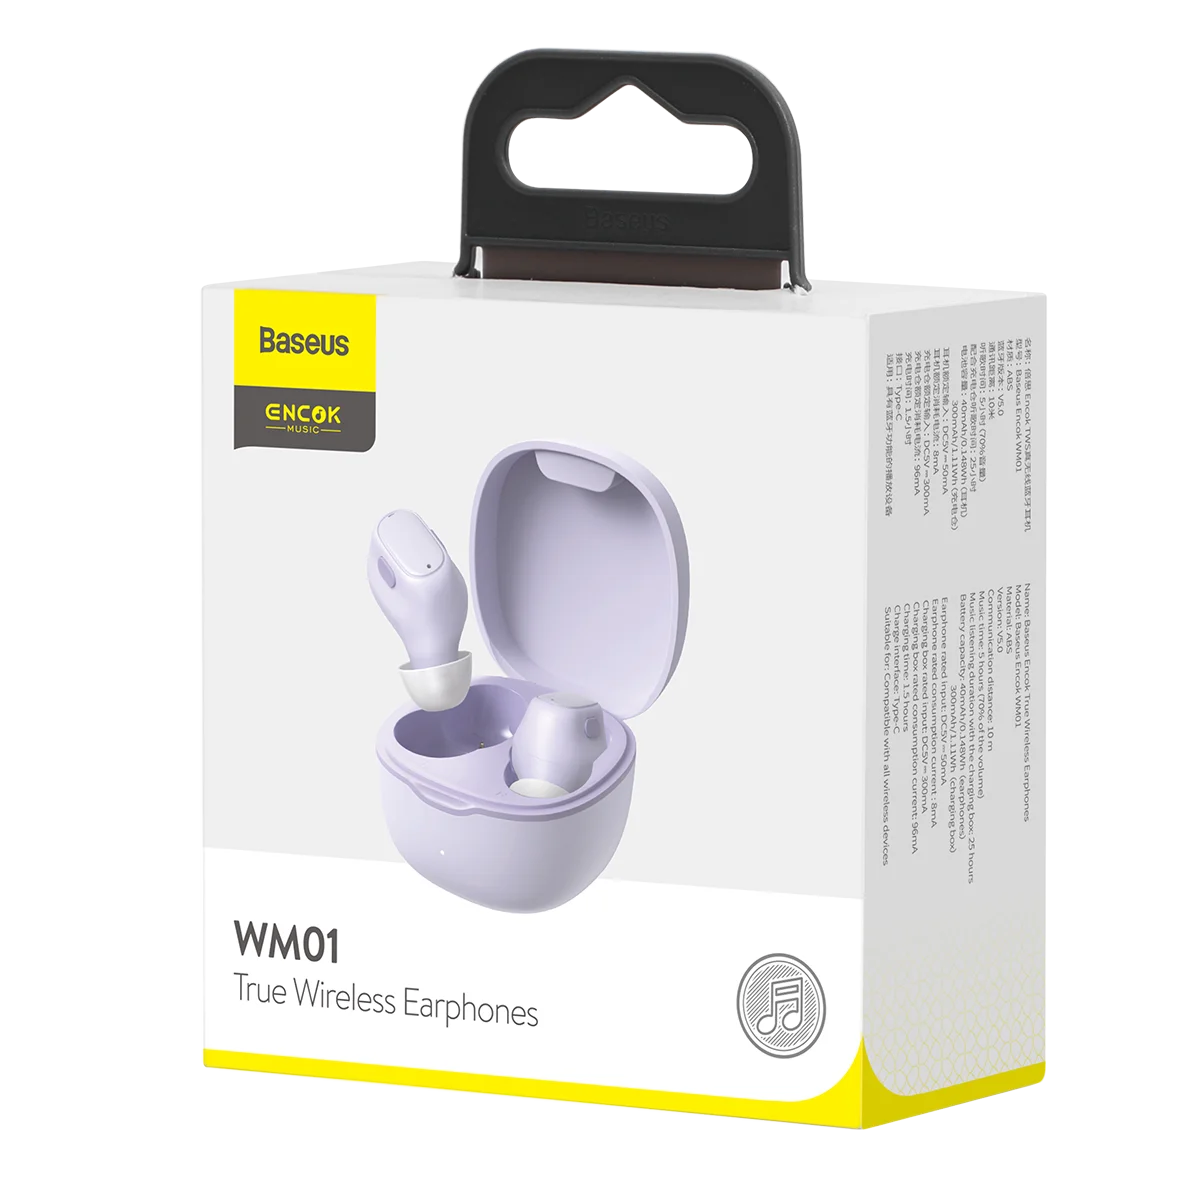 

Baseus Encok True Wireless Earphones NGWM01 For Baseus WM01 Type-C In-ear Earphone Color Purple